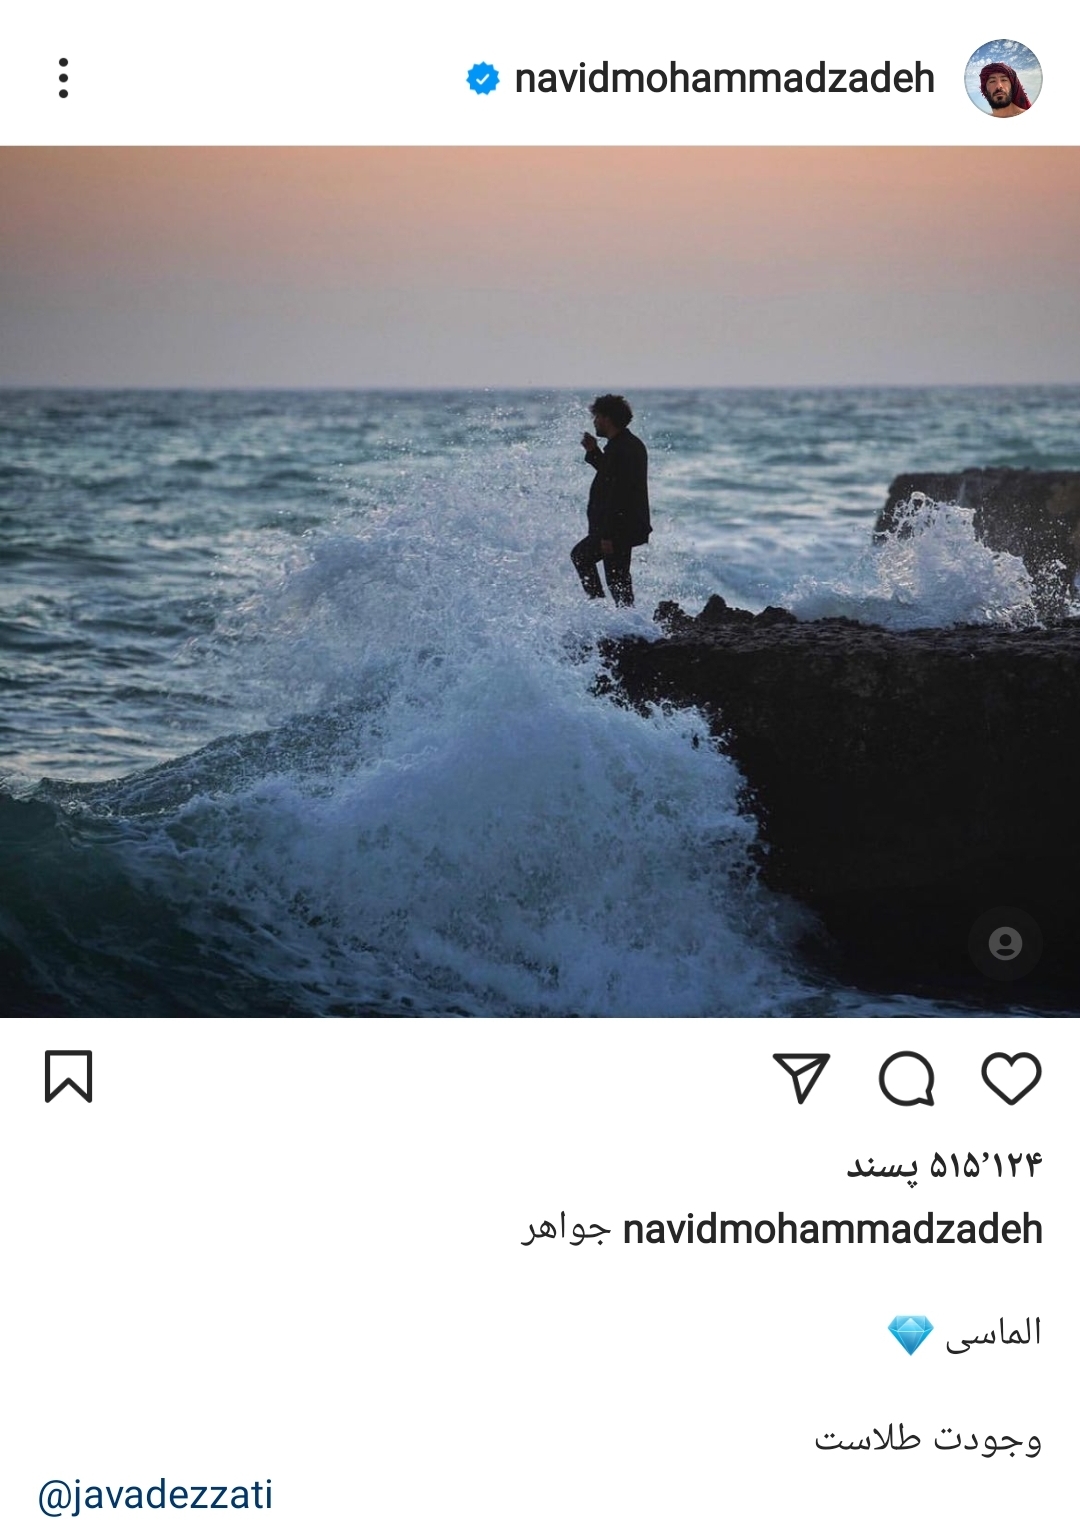 (تصویر) واکنش نوید محمدزاده به شایعه درگیری با جواد عزتی 2